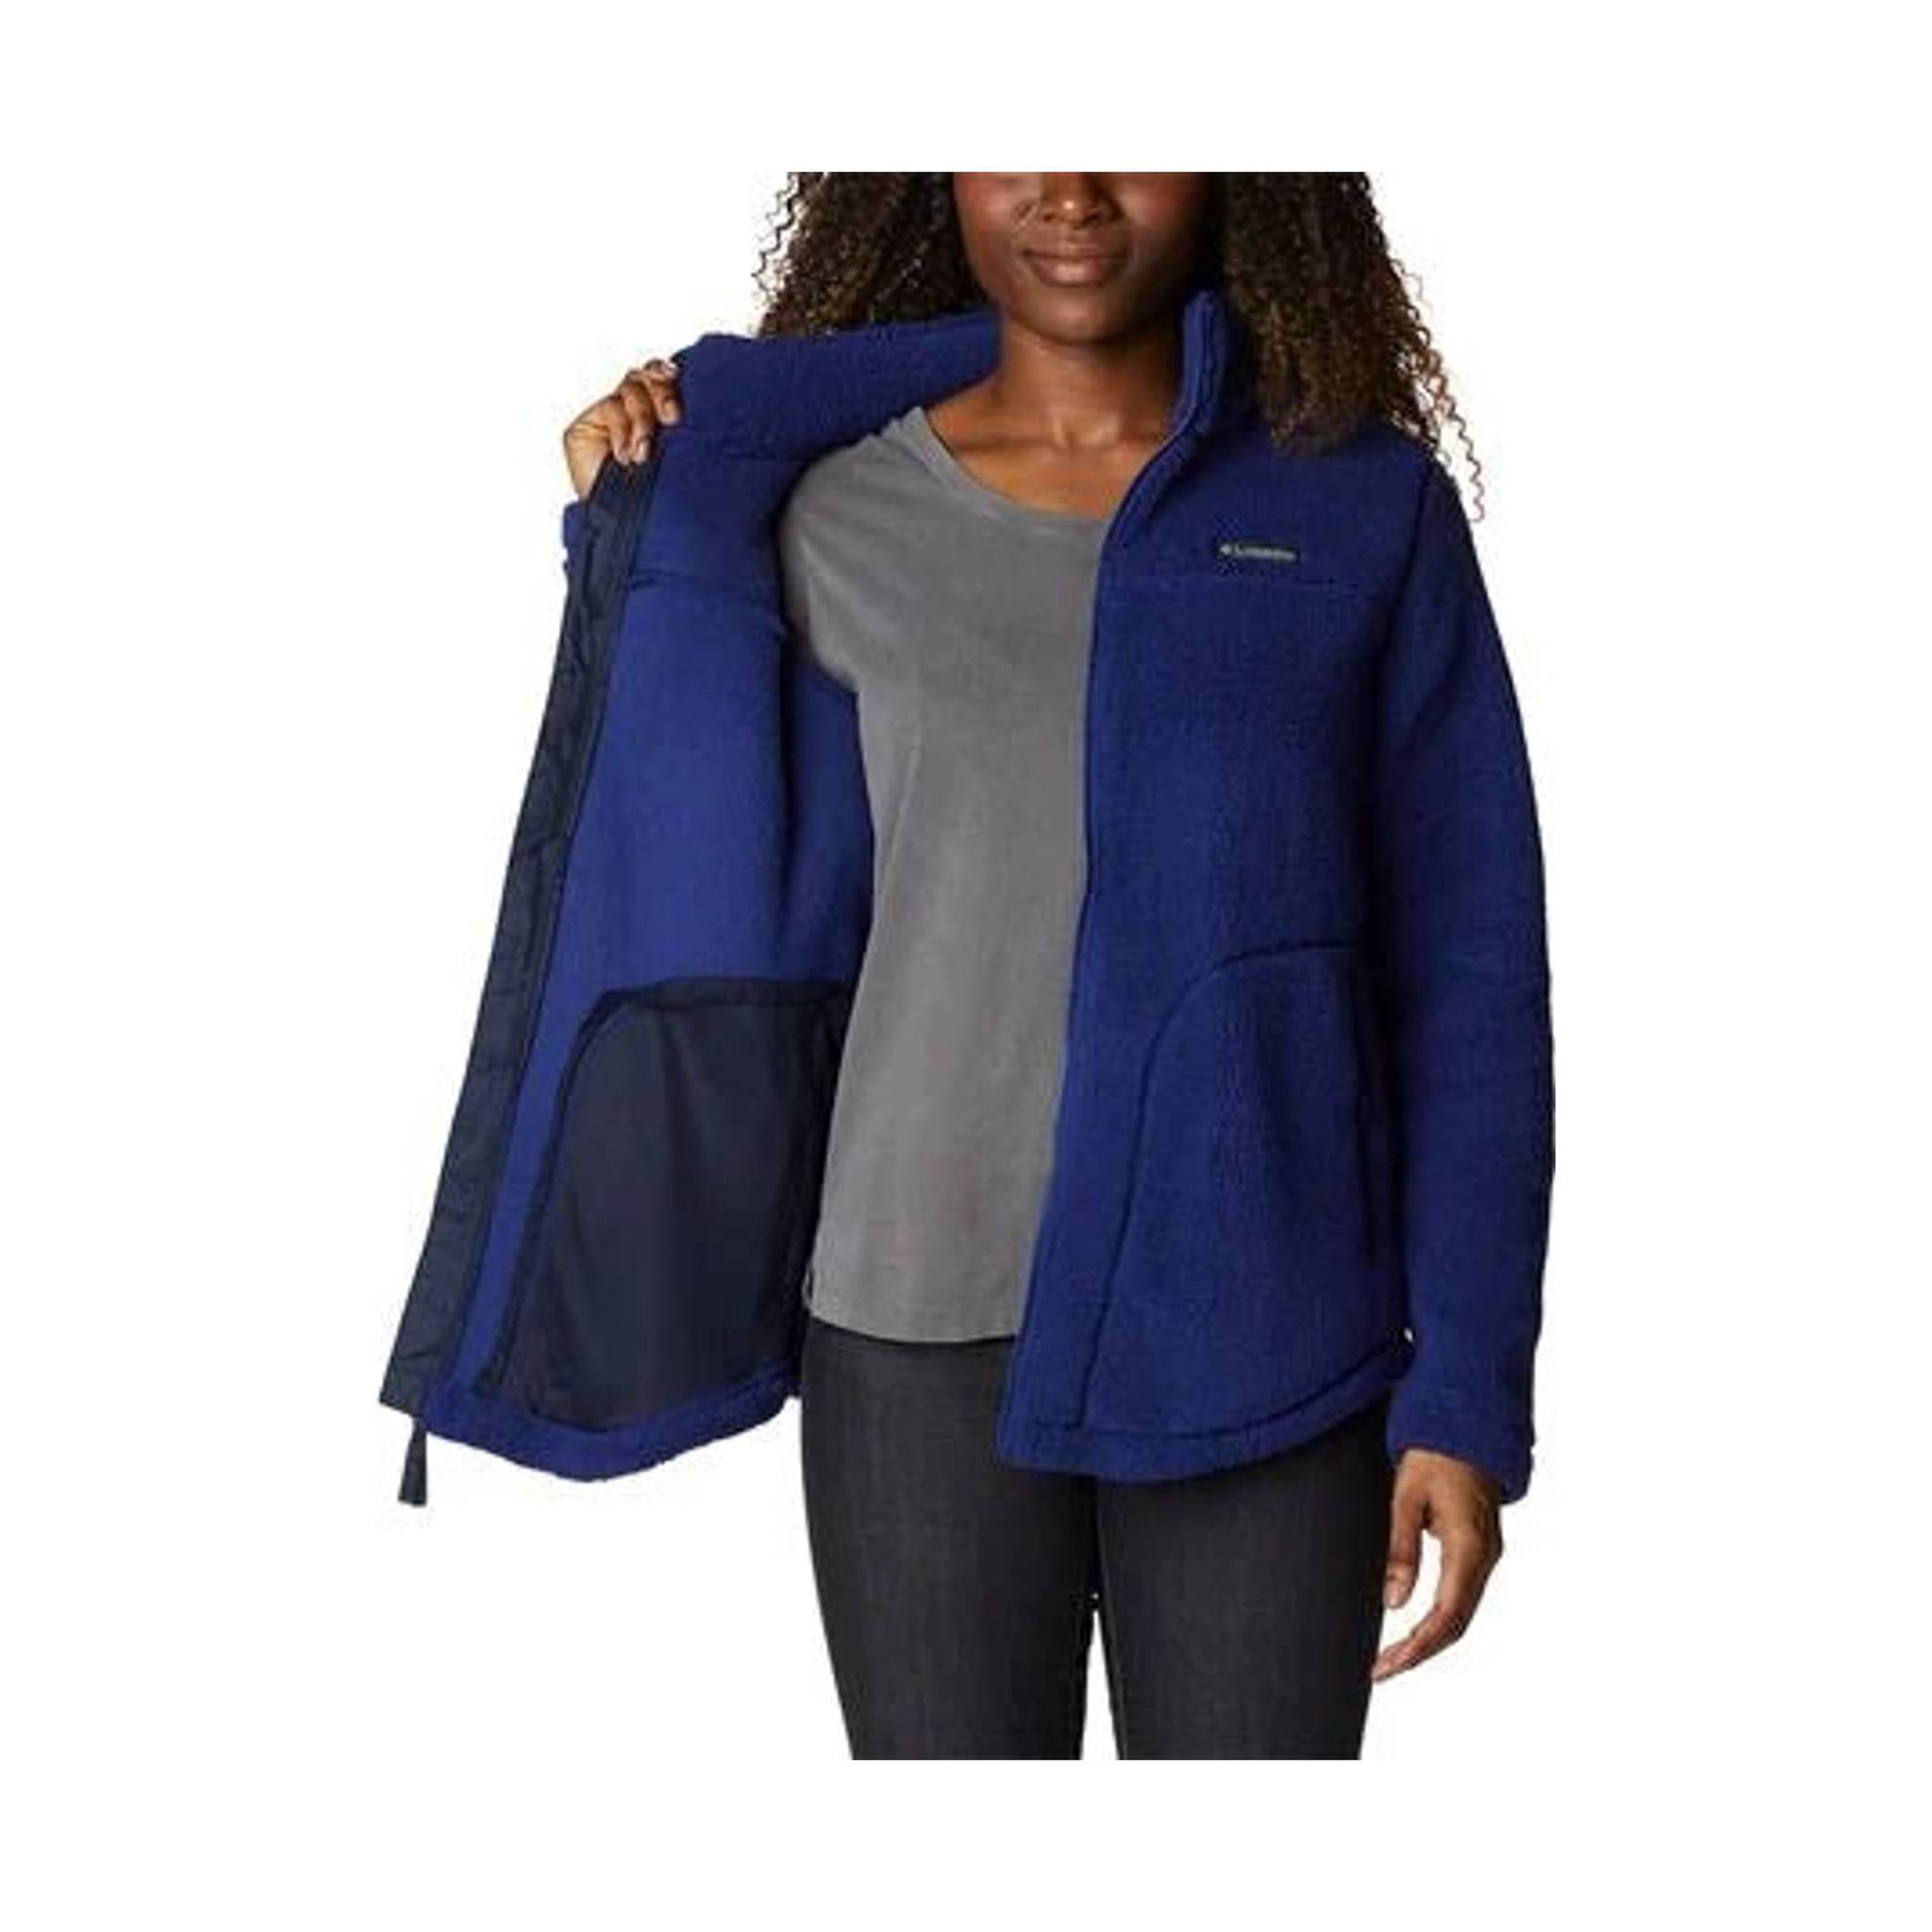 Columbia Women's West Bend Full Zip Fleece Jacket – Ernie's Sports